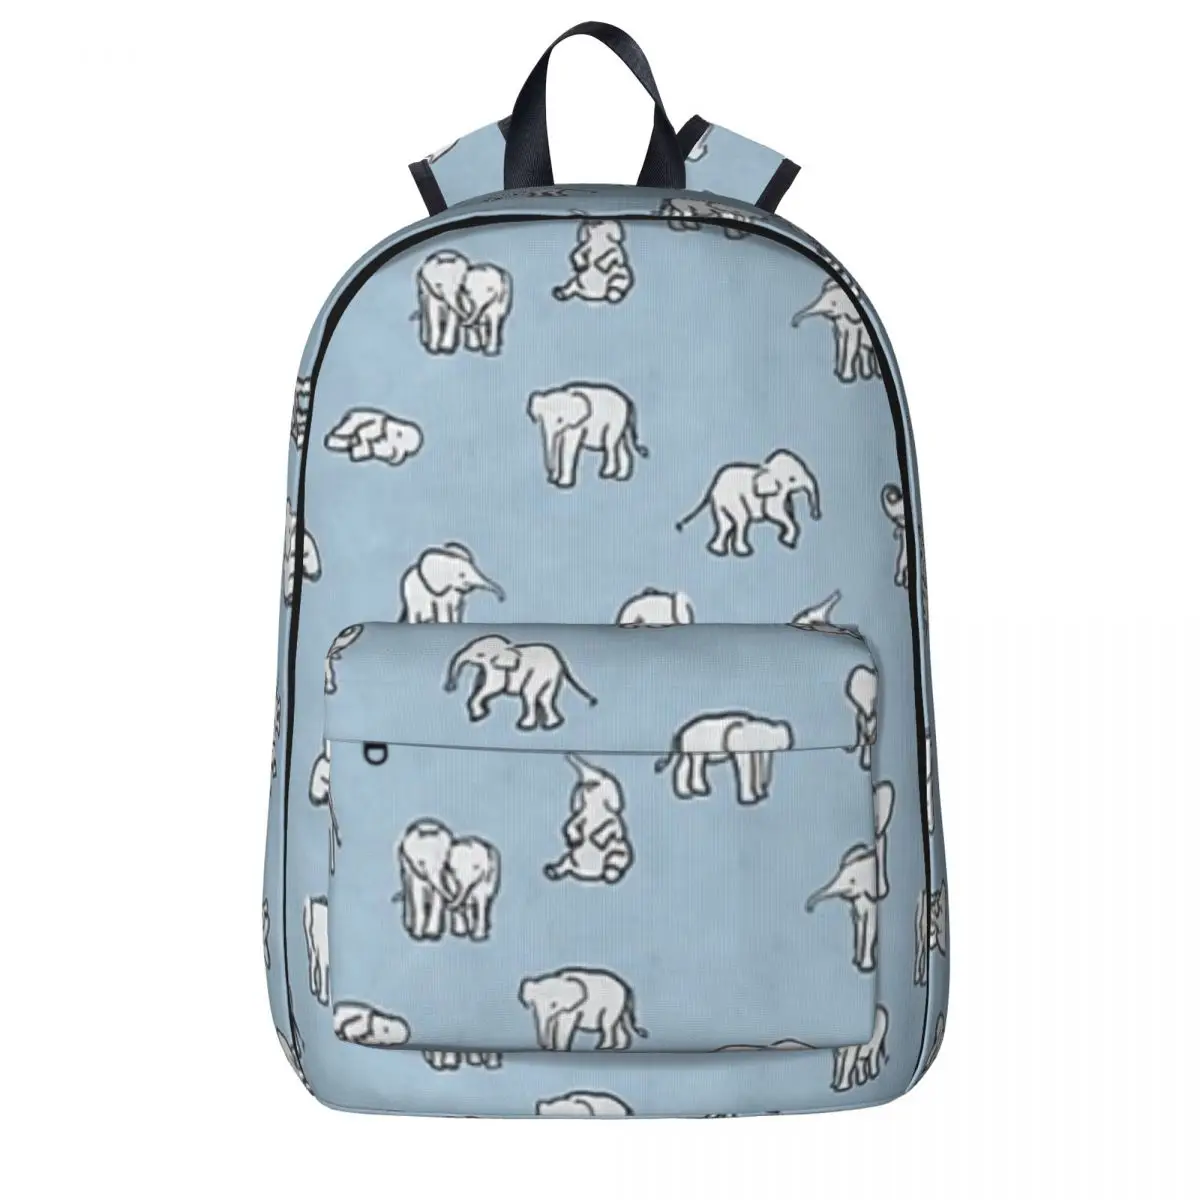 

Indian Baby Elephants In Baby Blue Backpack Boy Girl Bookbag Students School Bag Kids Rucksack Travel Rucksack Shoulder Bag